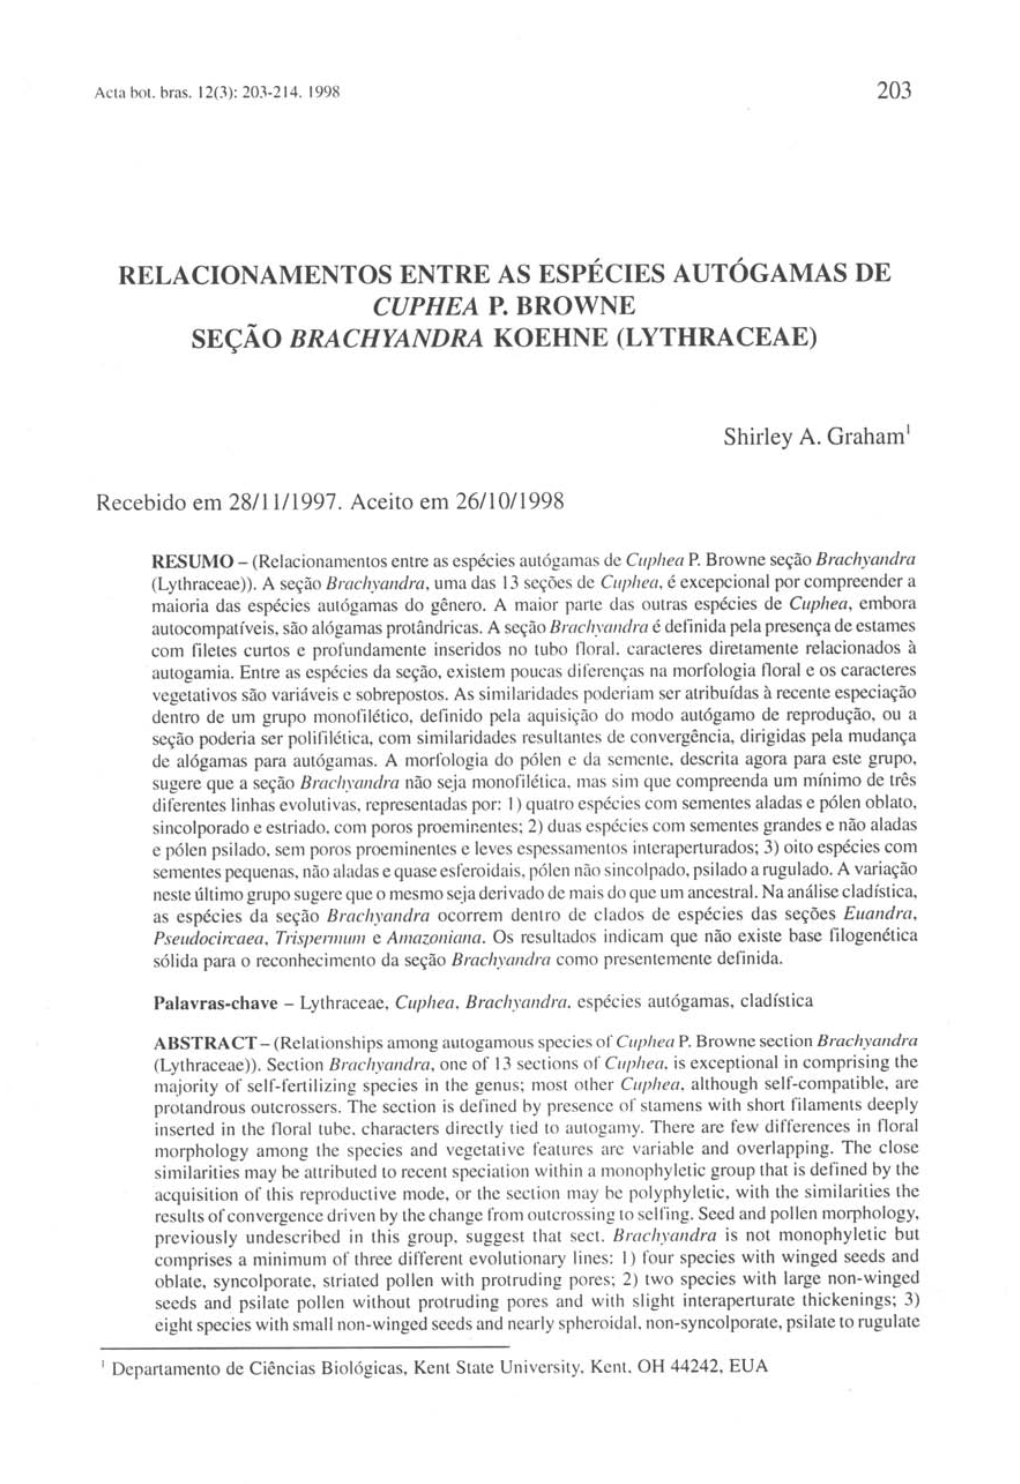 Relacionamentos Entre As Espécies Autógamas De Cuphea P. Browne Seção Brachyandra Koehne (Lythraceae)